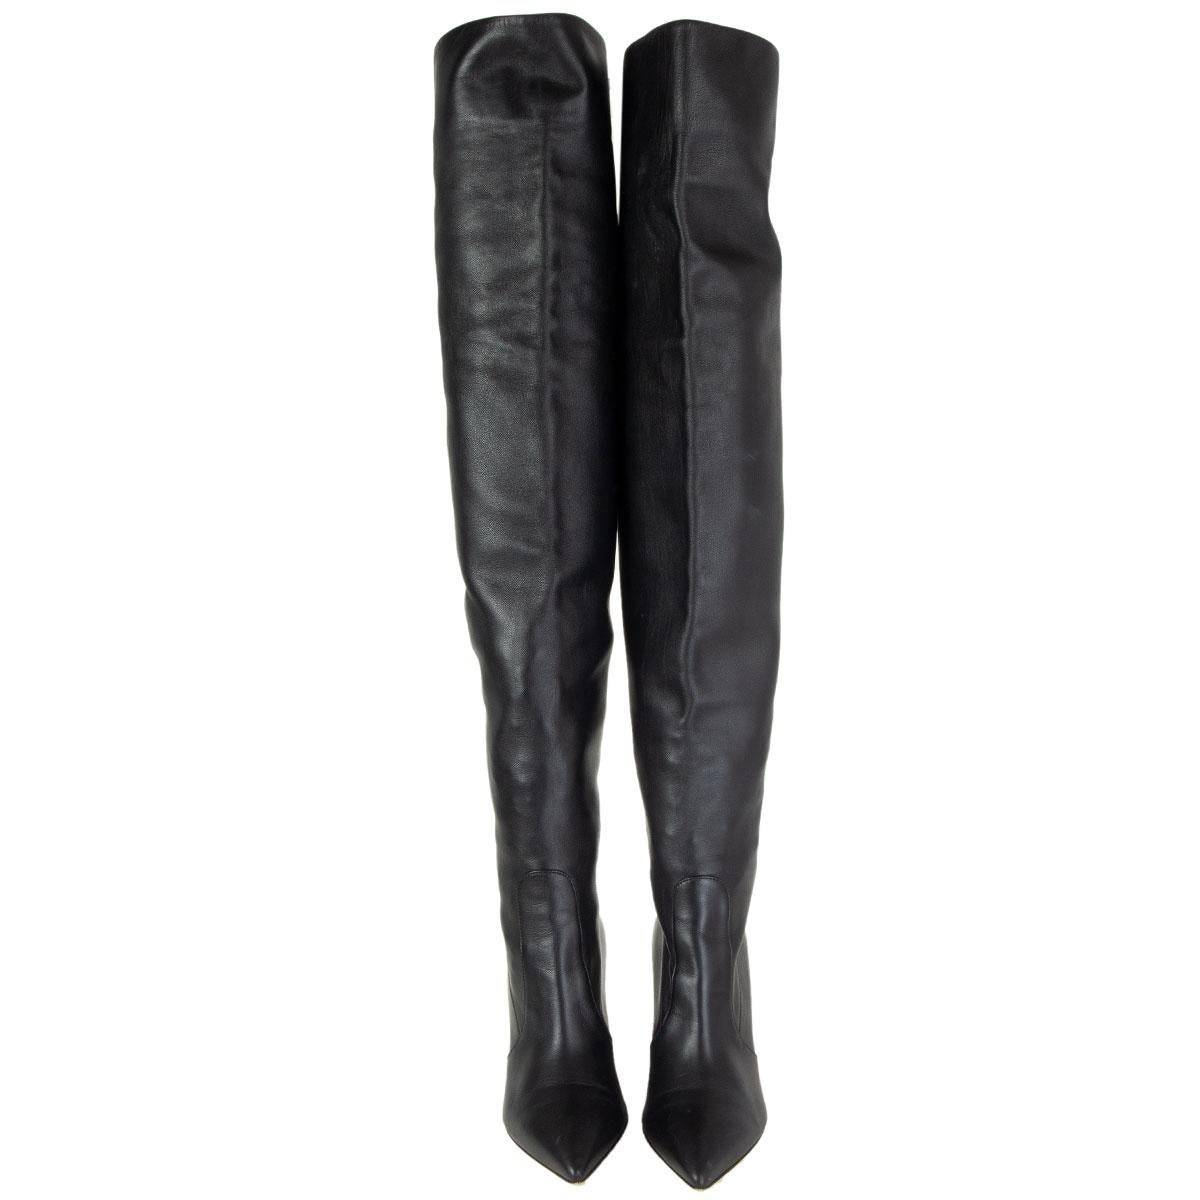 Gianvito Rossi spitz zulaufende Overknee-Stiefel mit Blockabsatz aus schwarzem, glattem Lammfell. Sie wurden getragen und sind in ausgezeichnetem Zustand. 

Aufgedruckt Größe 38
Schuhgröße 38
Innensohle 25cm (9.8in)
Breite 7,5 cm (2,9 Zoll)
Absatz